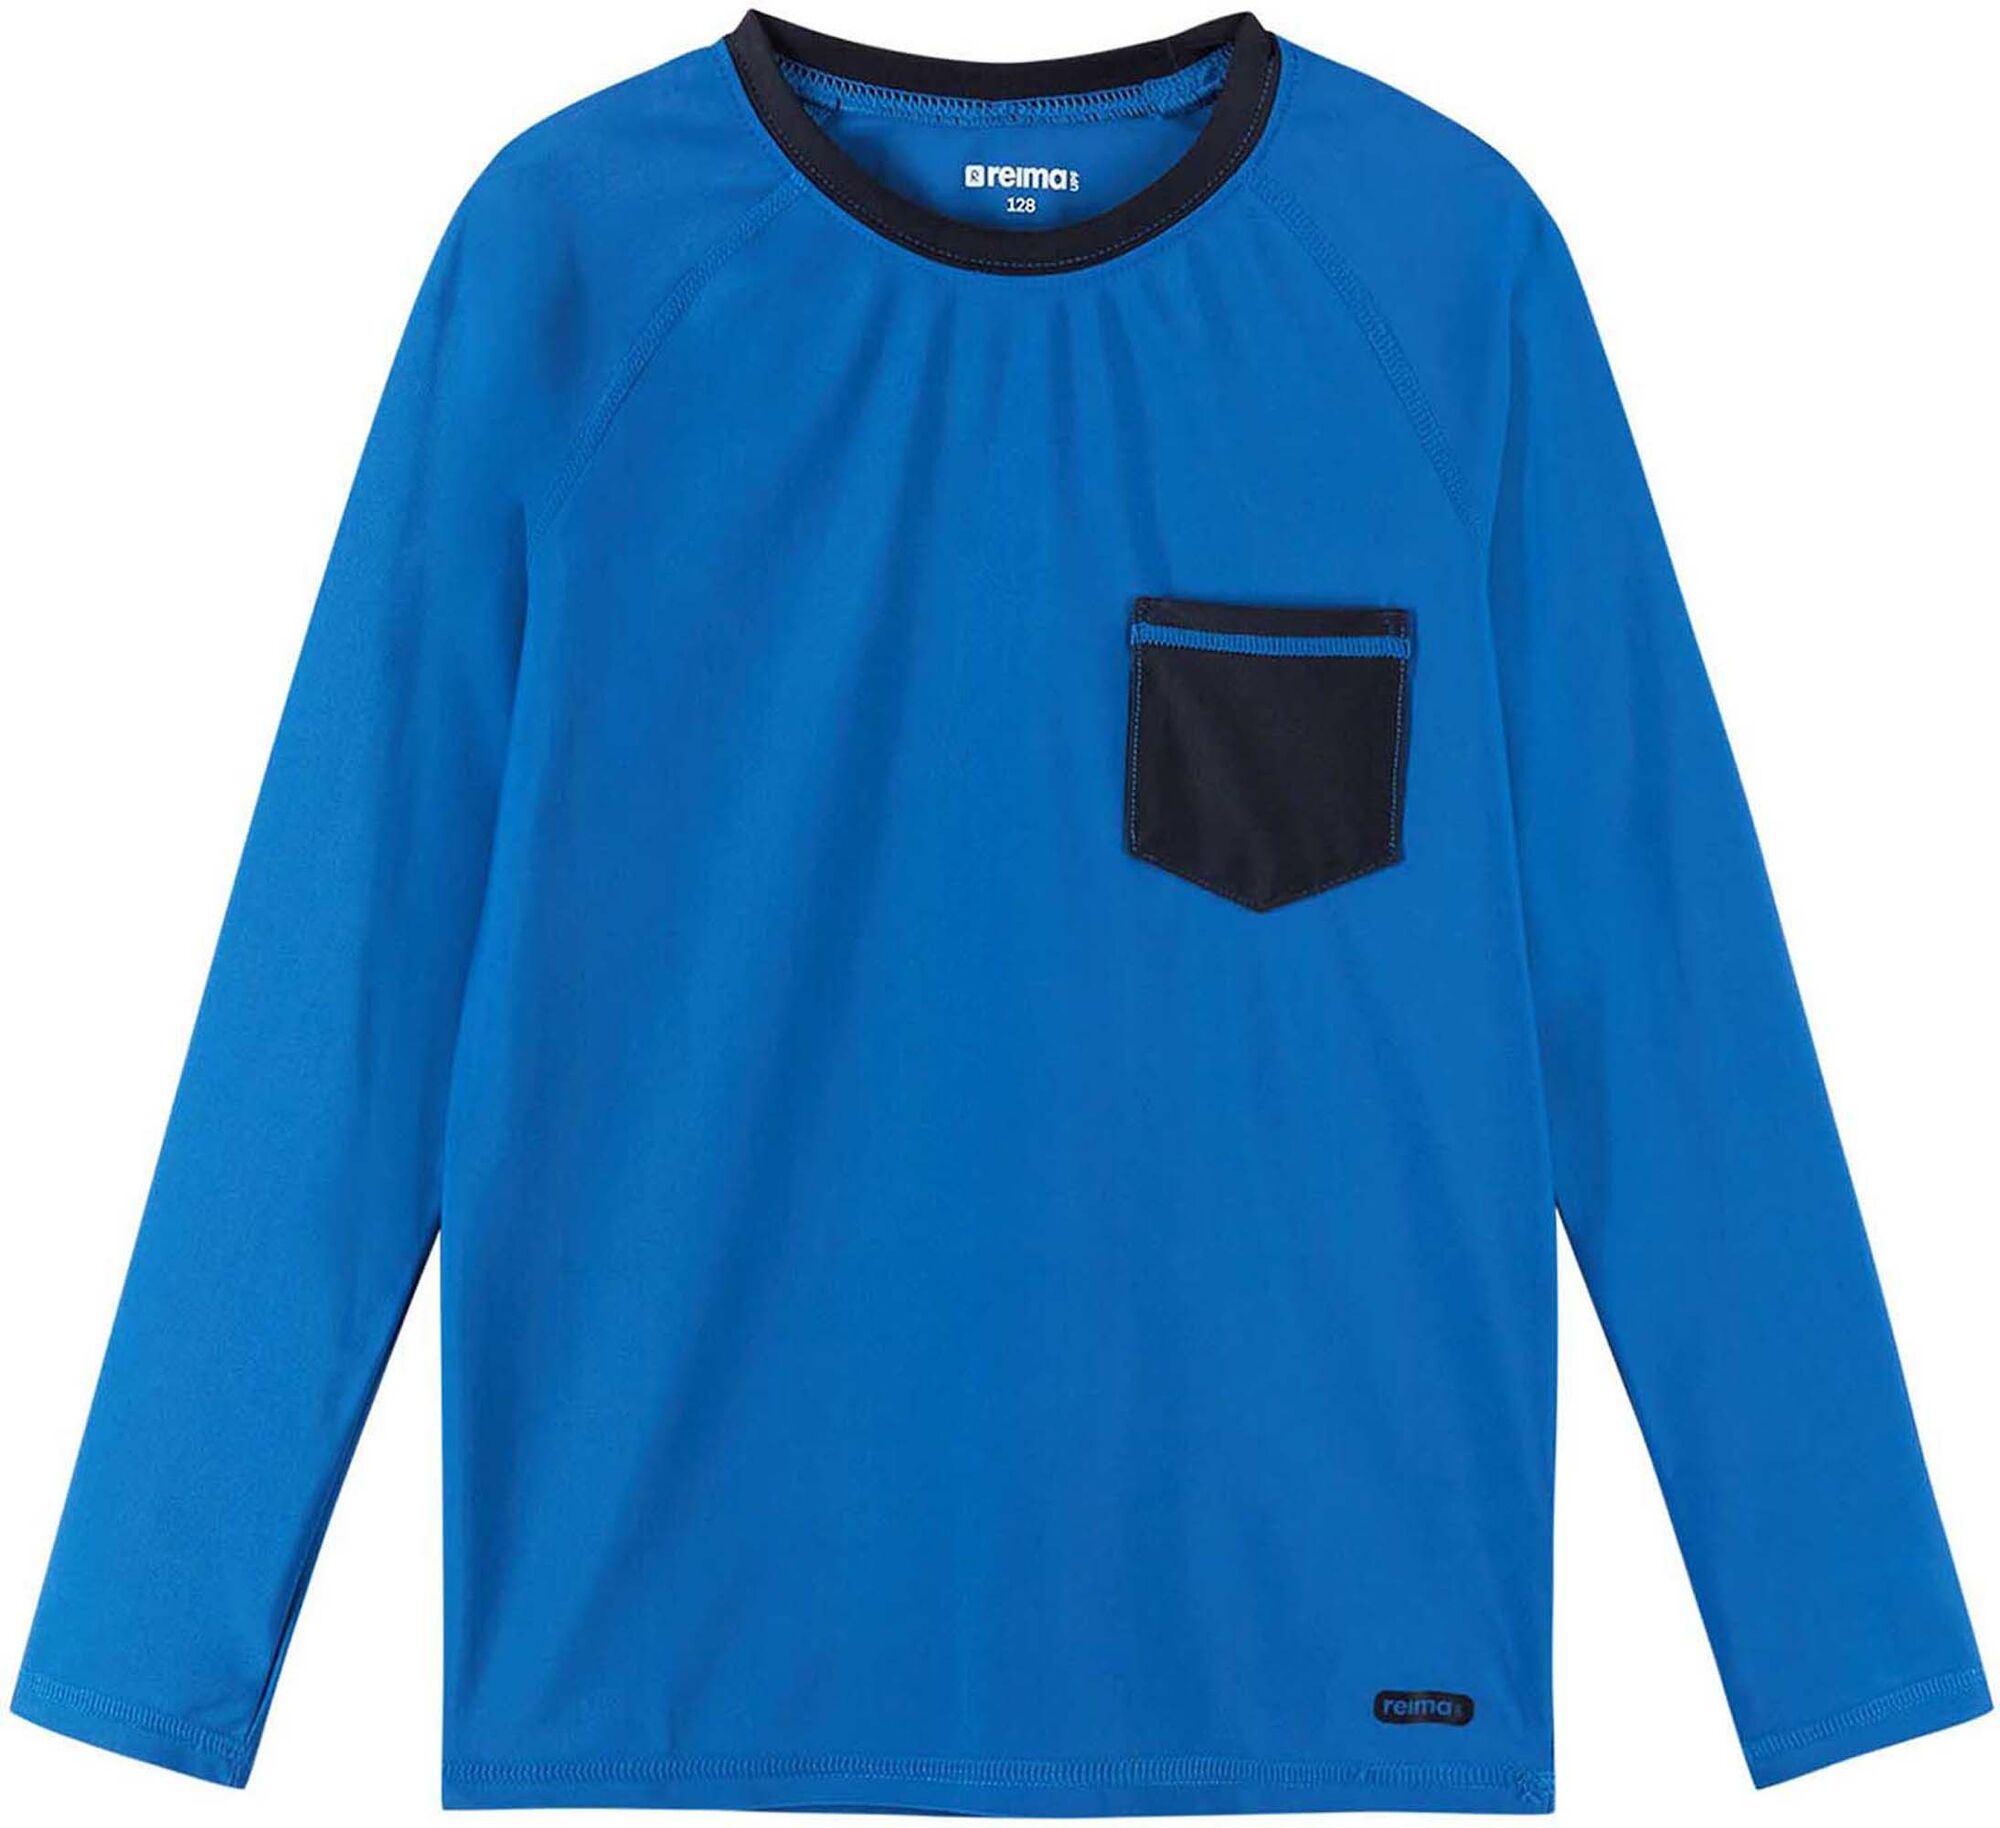 Reima Kroolaus UV-tröja Blue 104